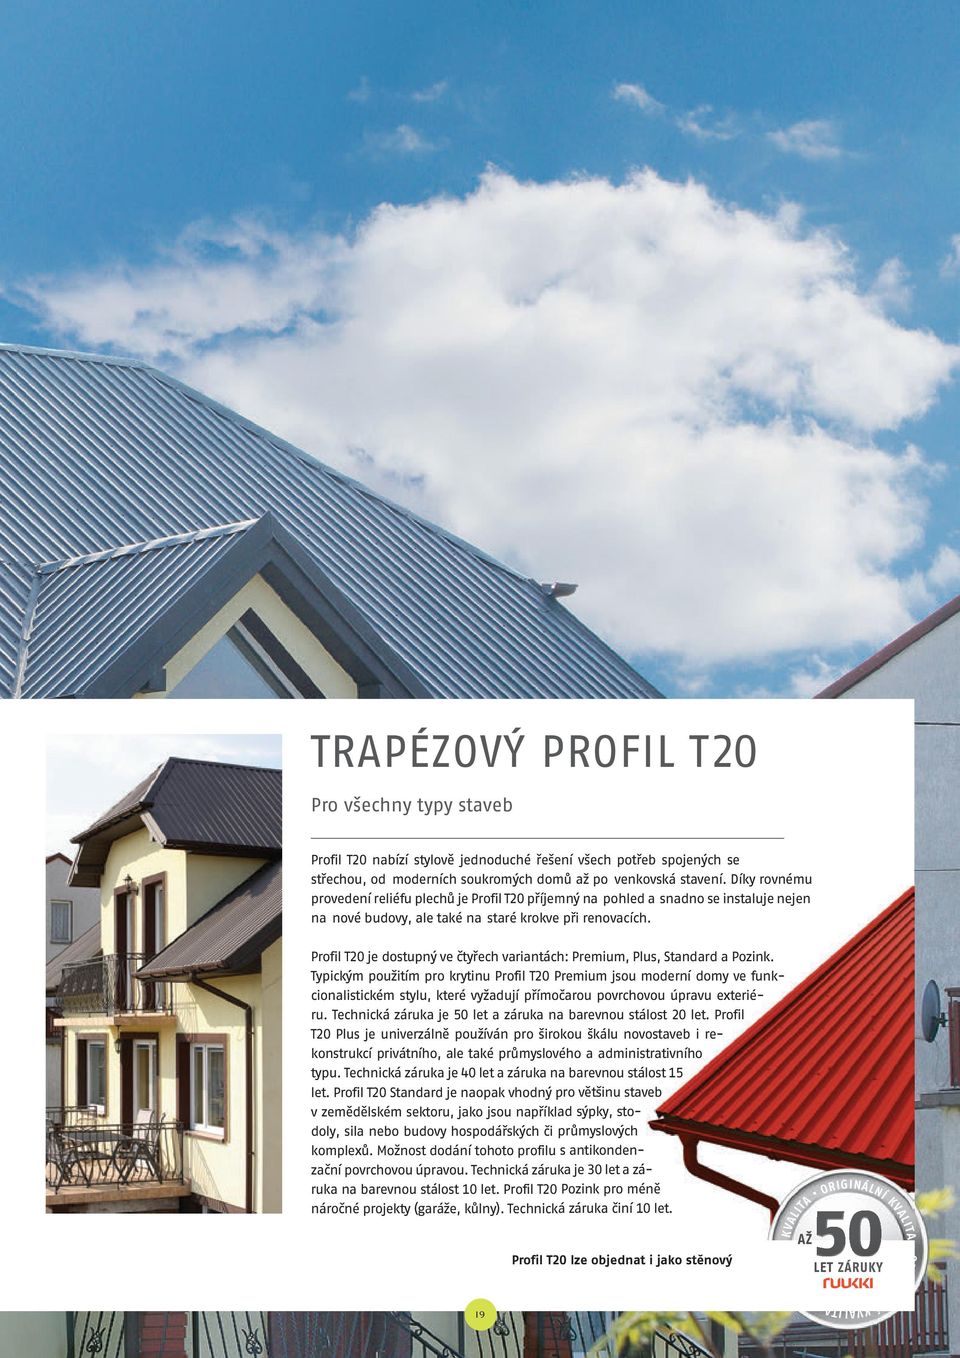 Profil T20 je dostupný ve čtyřech variantách: Premium, Plus, Standard a Pozink.